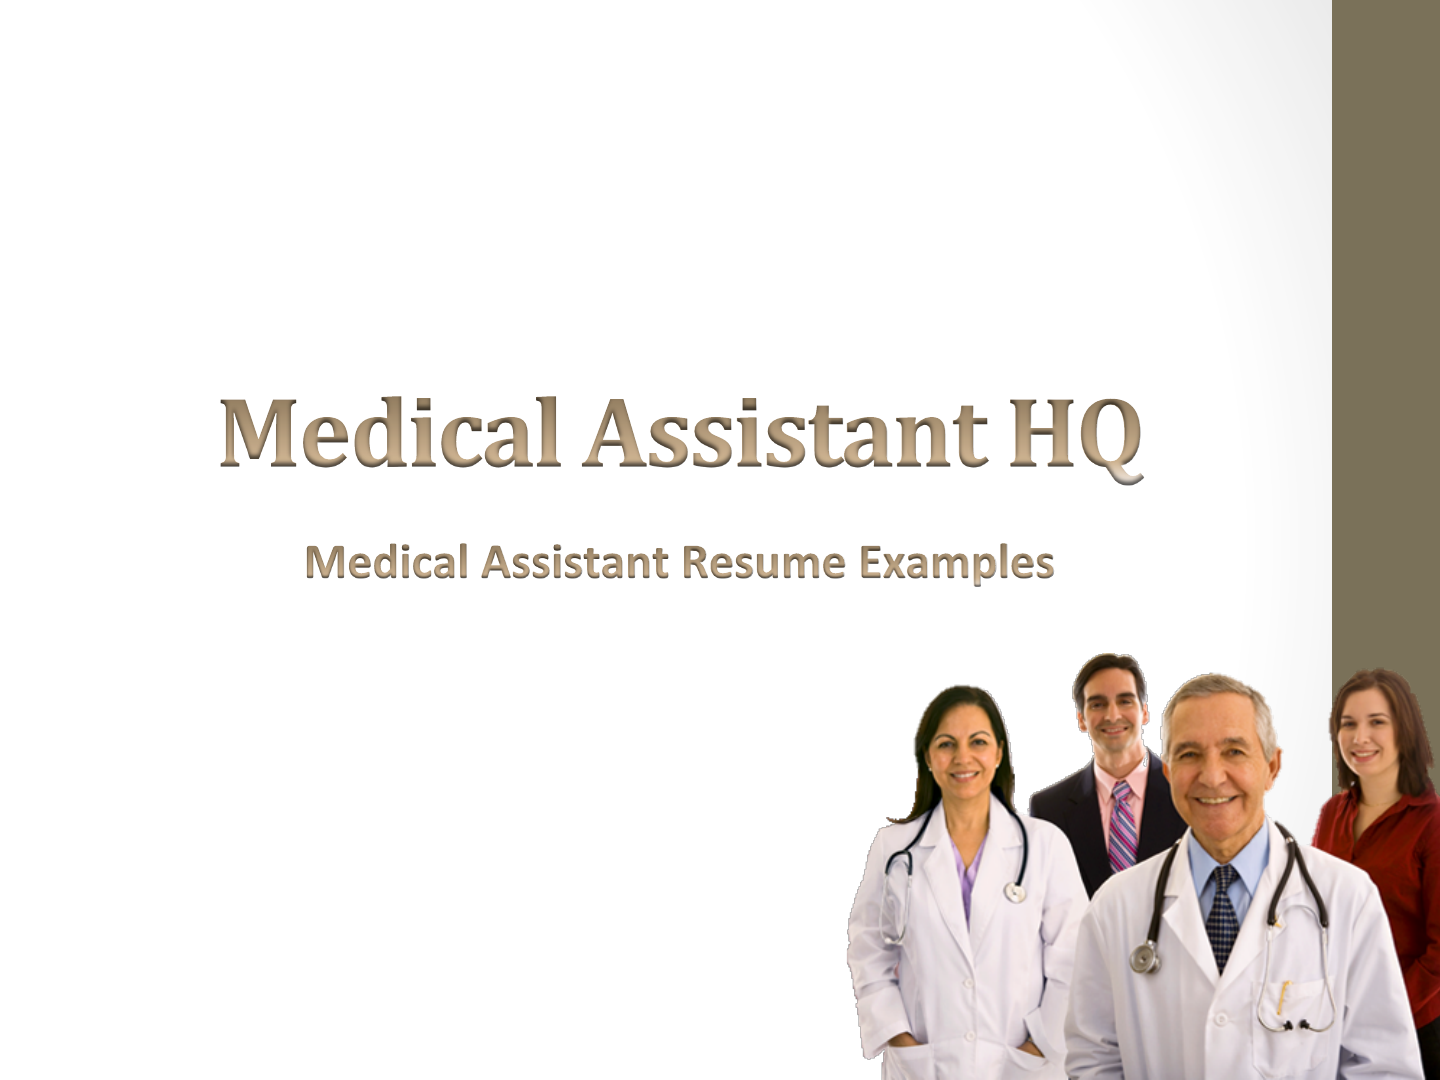 Medical Assistant Resume Sample 2